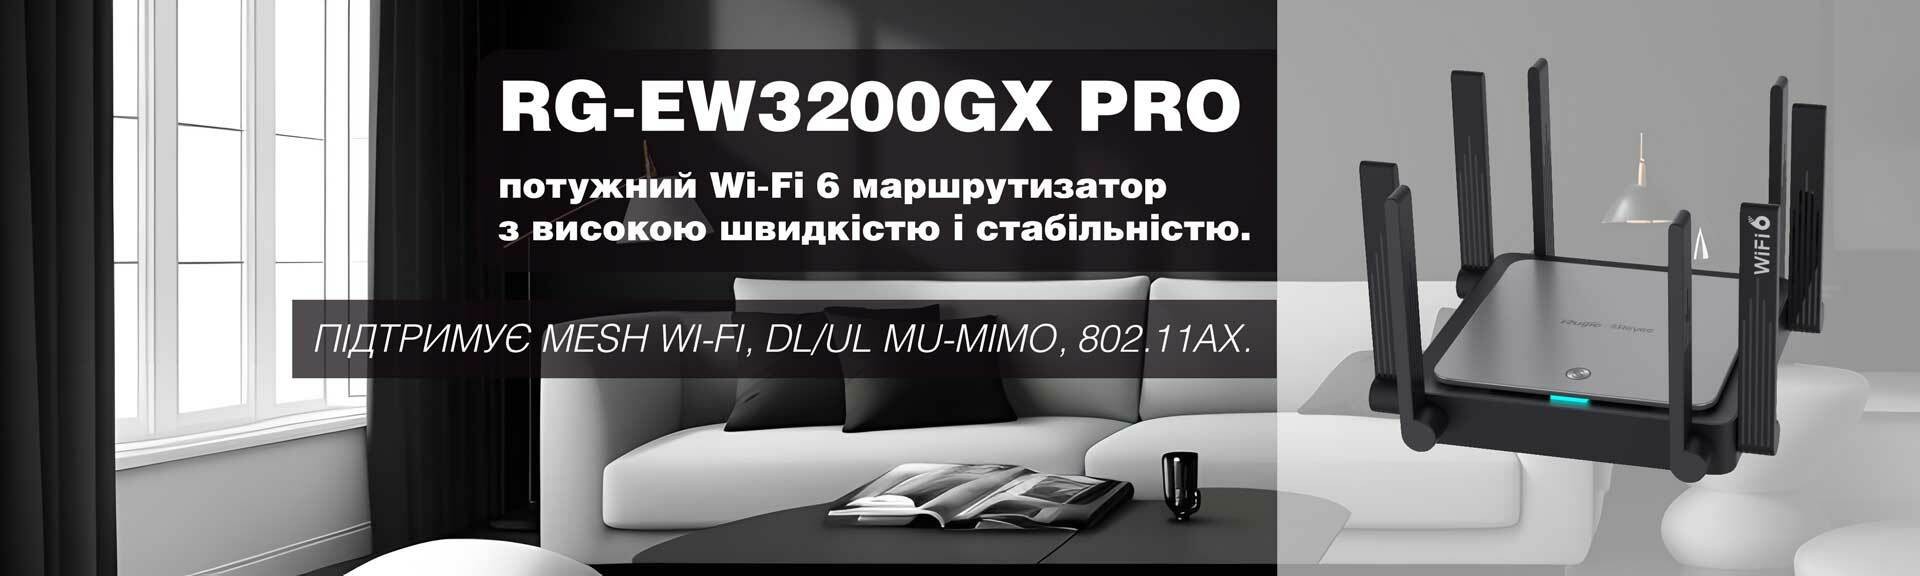 Ruijie RG-EW3200GX PRO Wi-Fi 6 Wireless Router